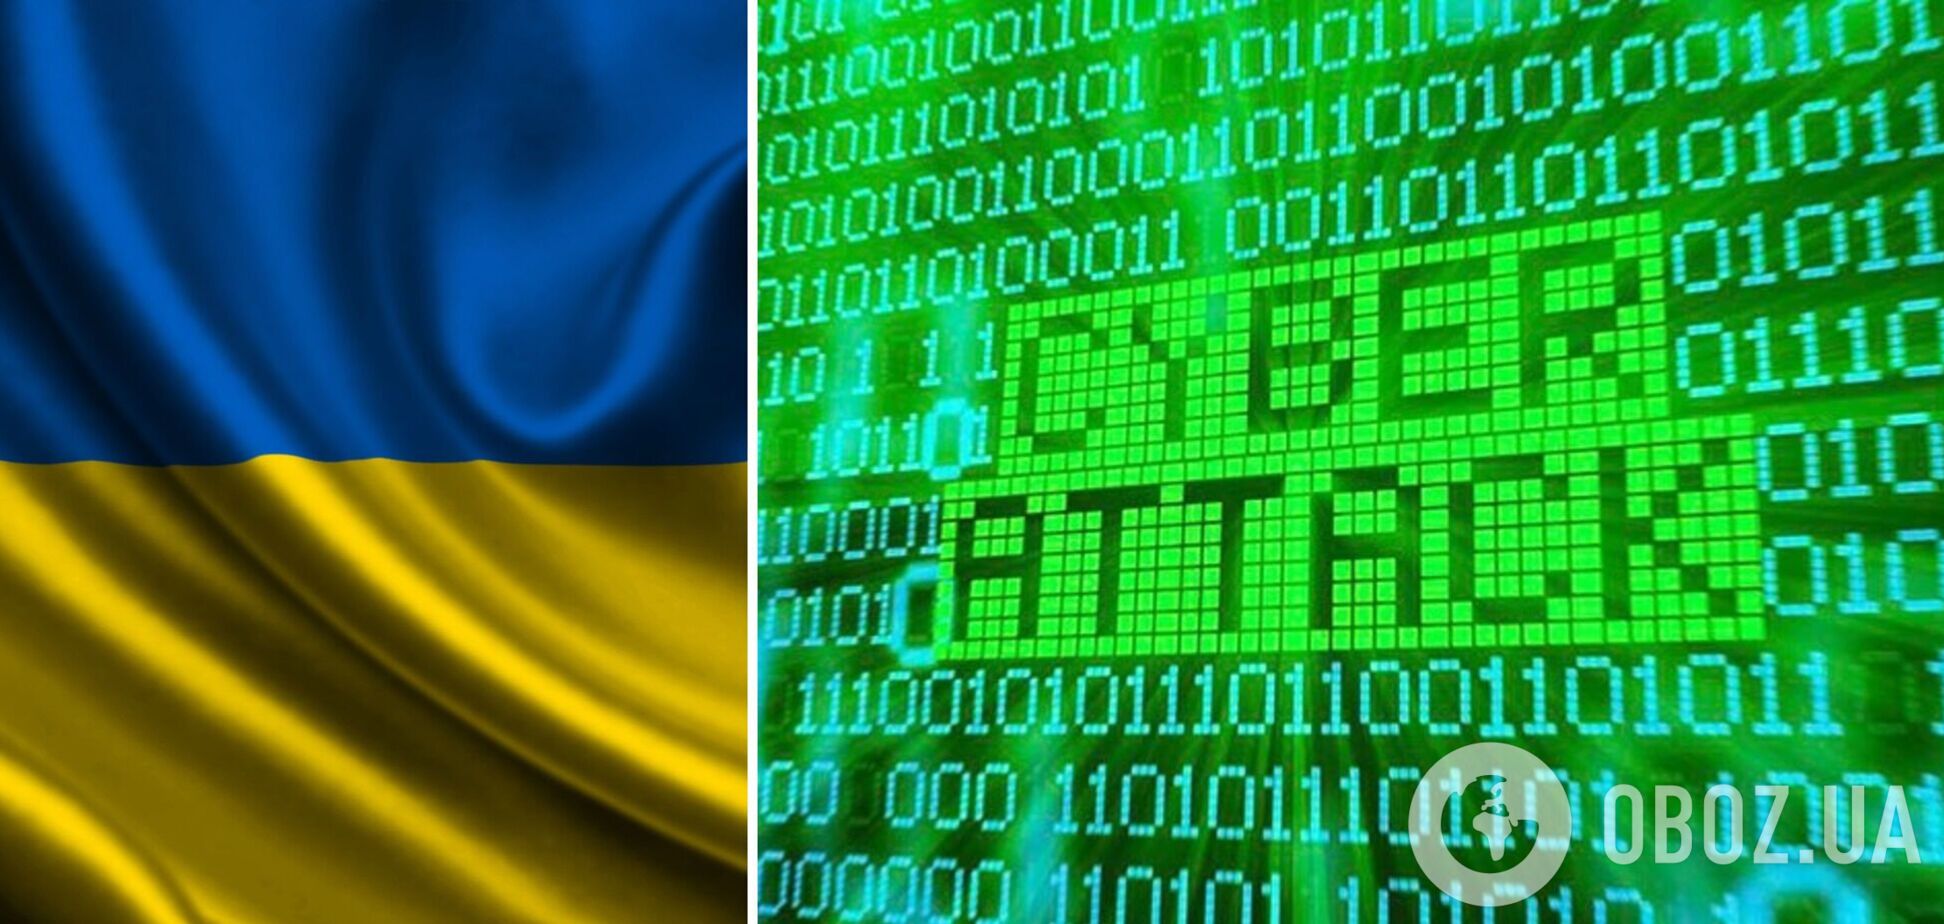 Ряд правительственных сайтов Украины перестали открываться